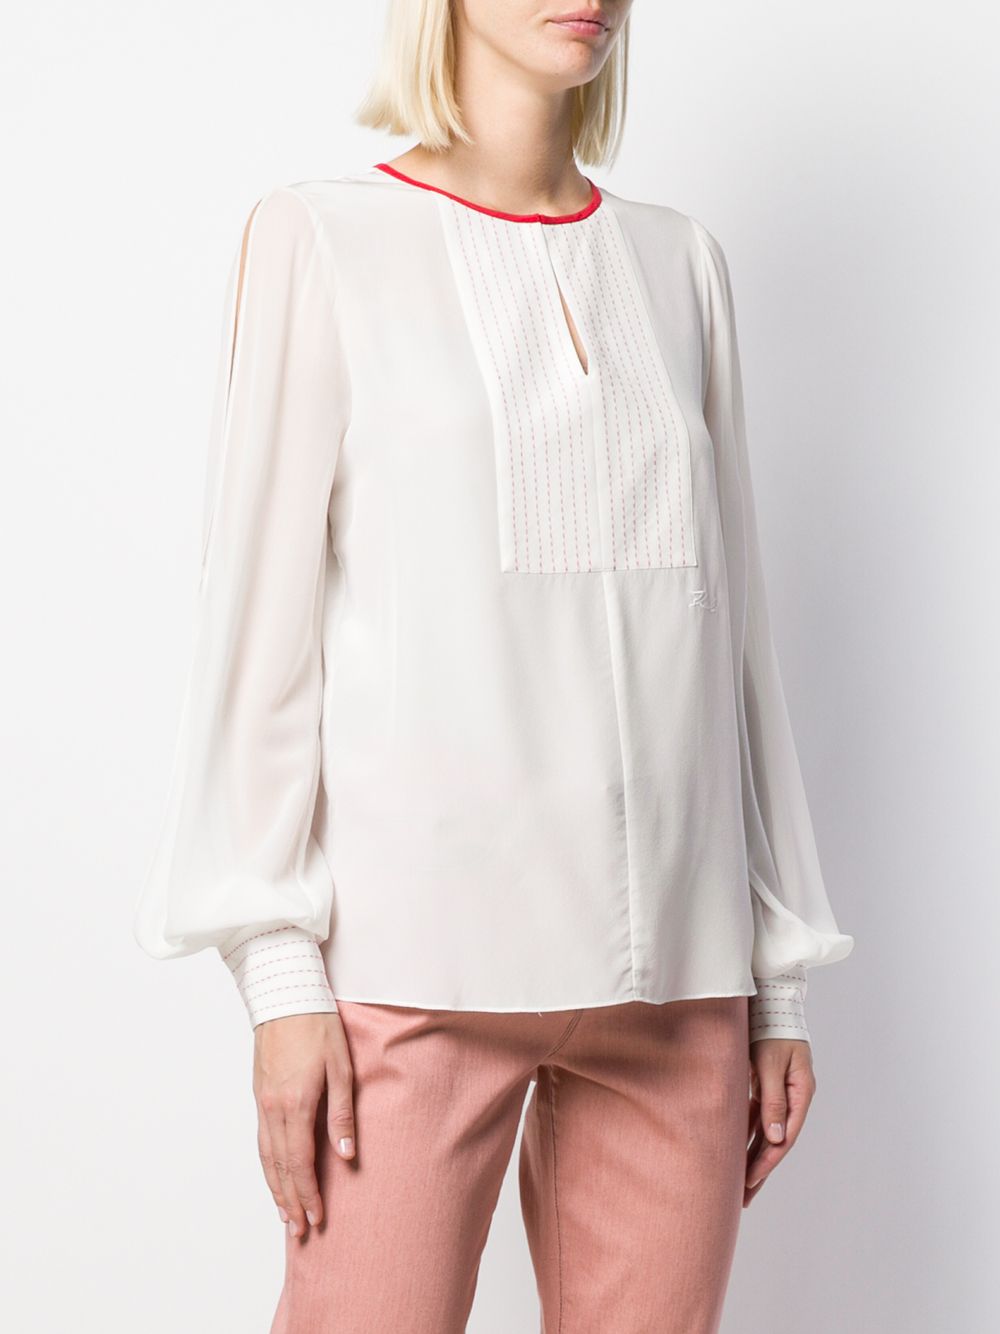 фото Karl lagerfeld блузка с декоративной строчкой